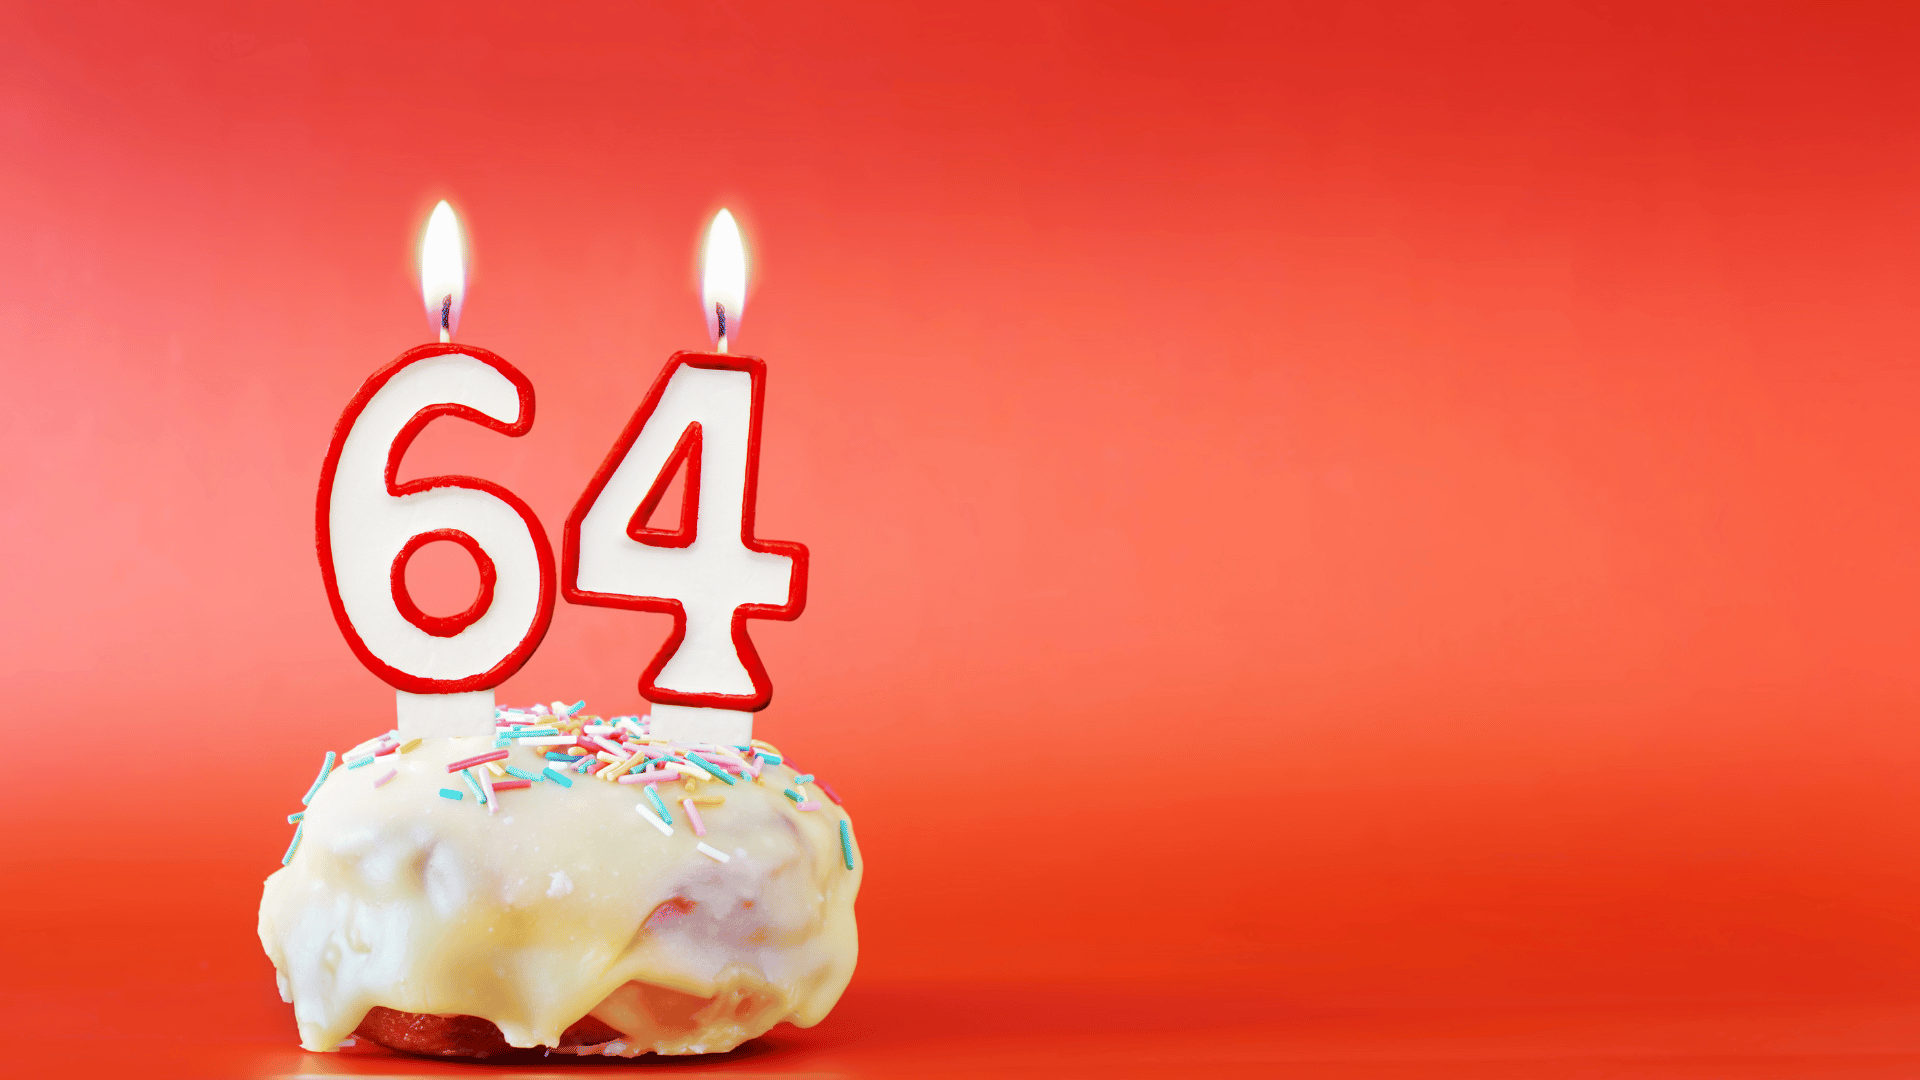 Aniversário de sessenta e quatro anos. Cupcake com vela acesa branca em forma de número 64